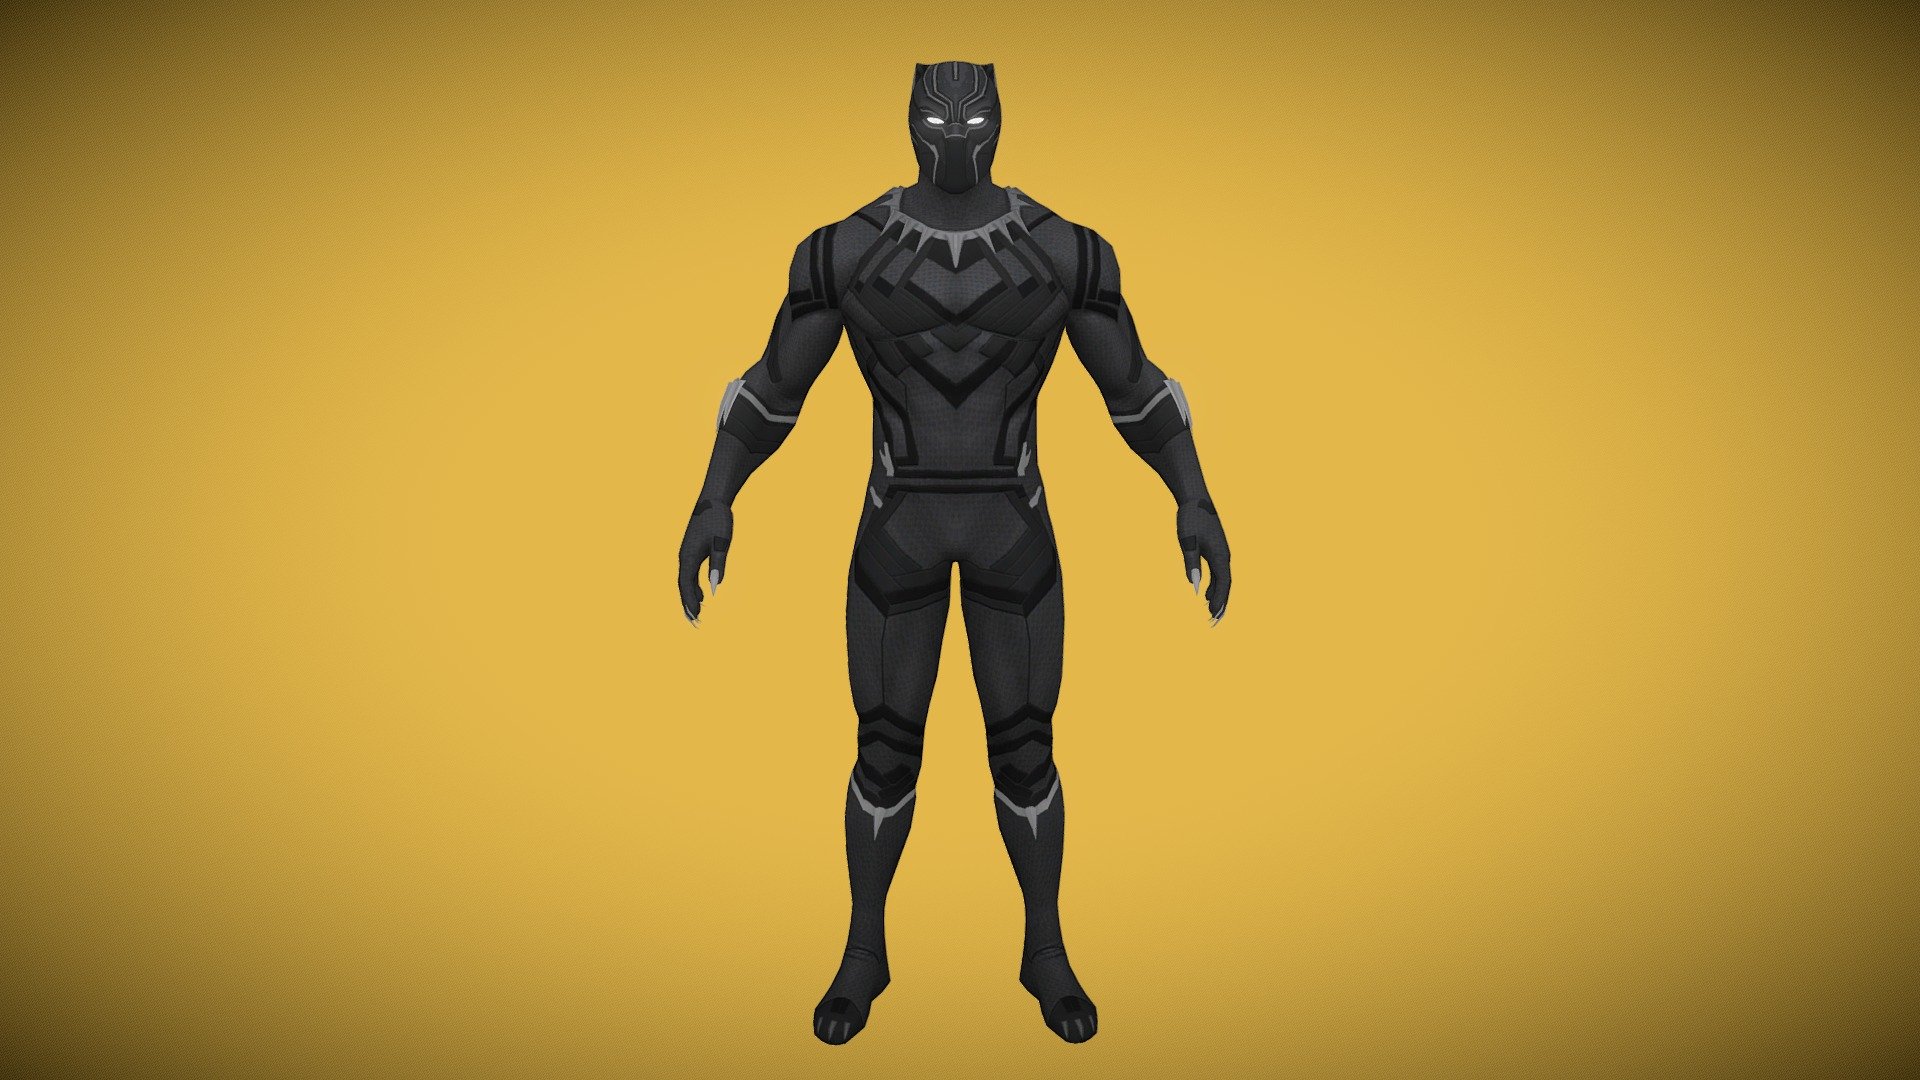 Black Panther - Download Free 3D model by Lil_CJ_5888 (@lil_cj_5888)  [e73e355]